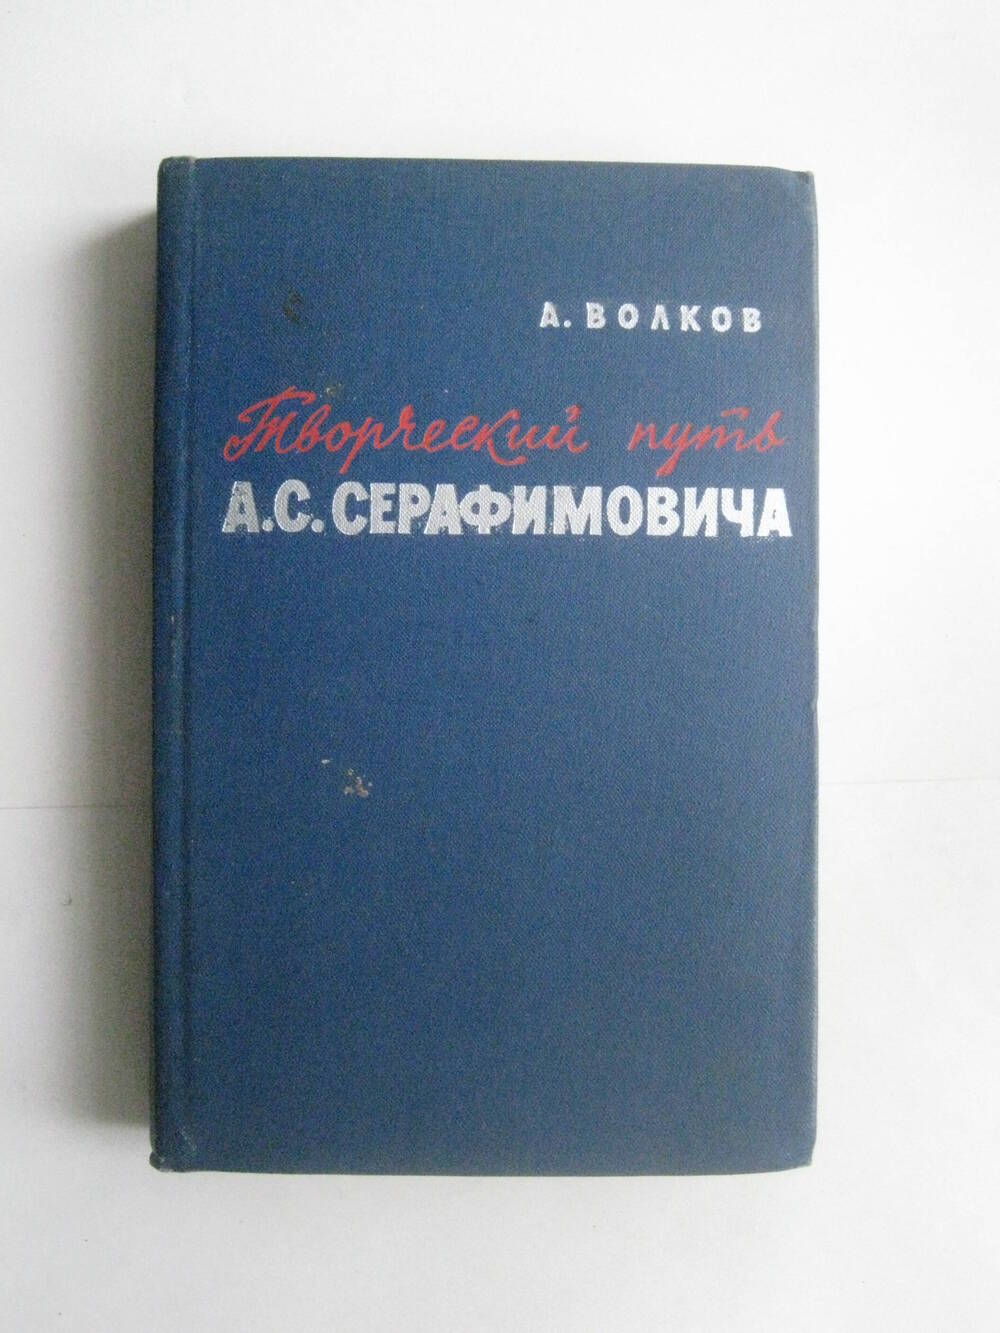 Книга. Волков А. Творческий путь А.С. Серафимовича. - М., 1960.